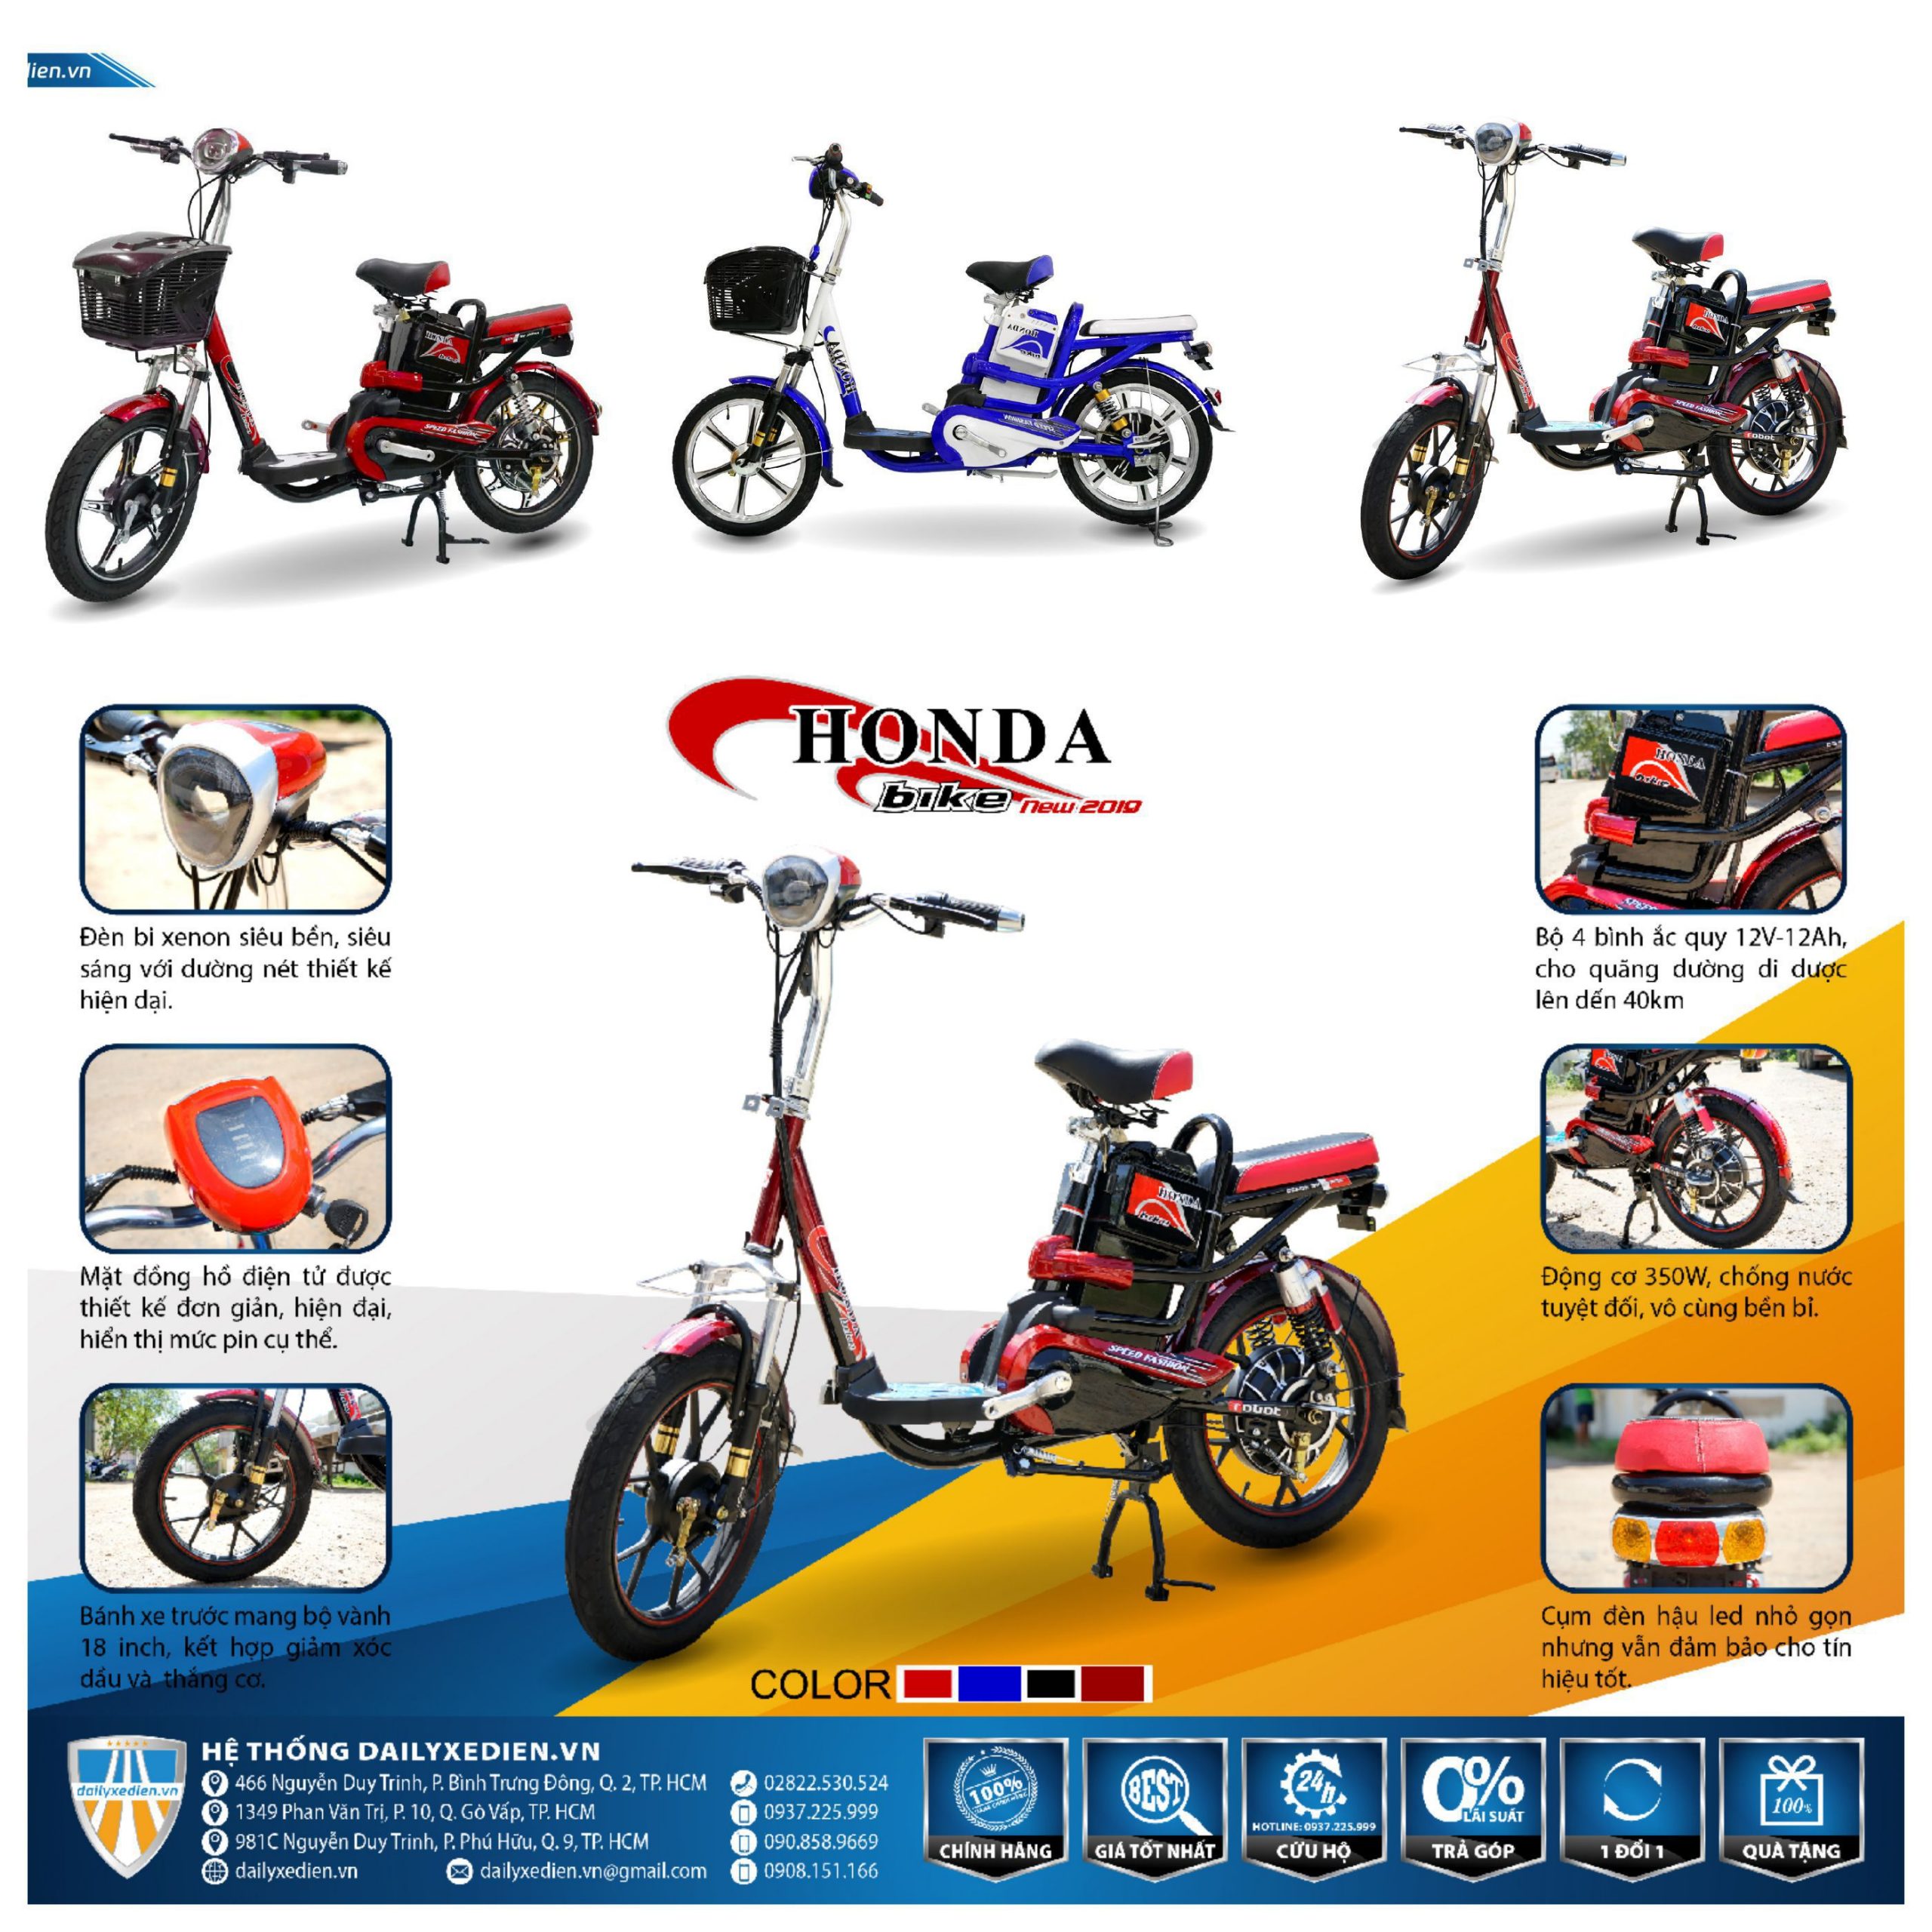 Đại lý bán Xe đạp điện Honda M6 | 0979.66.22.88 | Xebaonam.com - YouTube